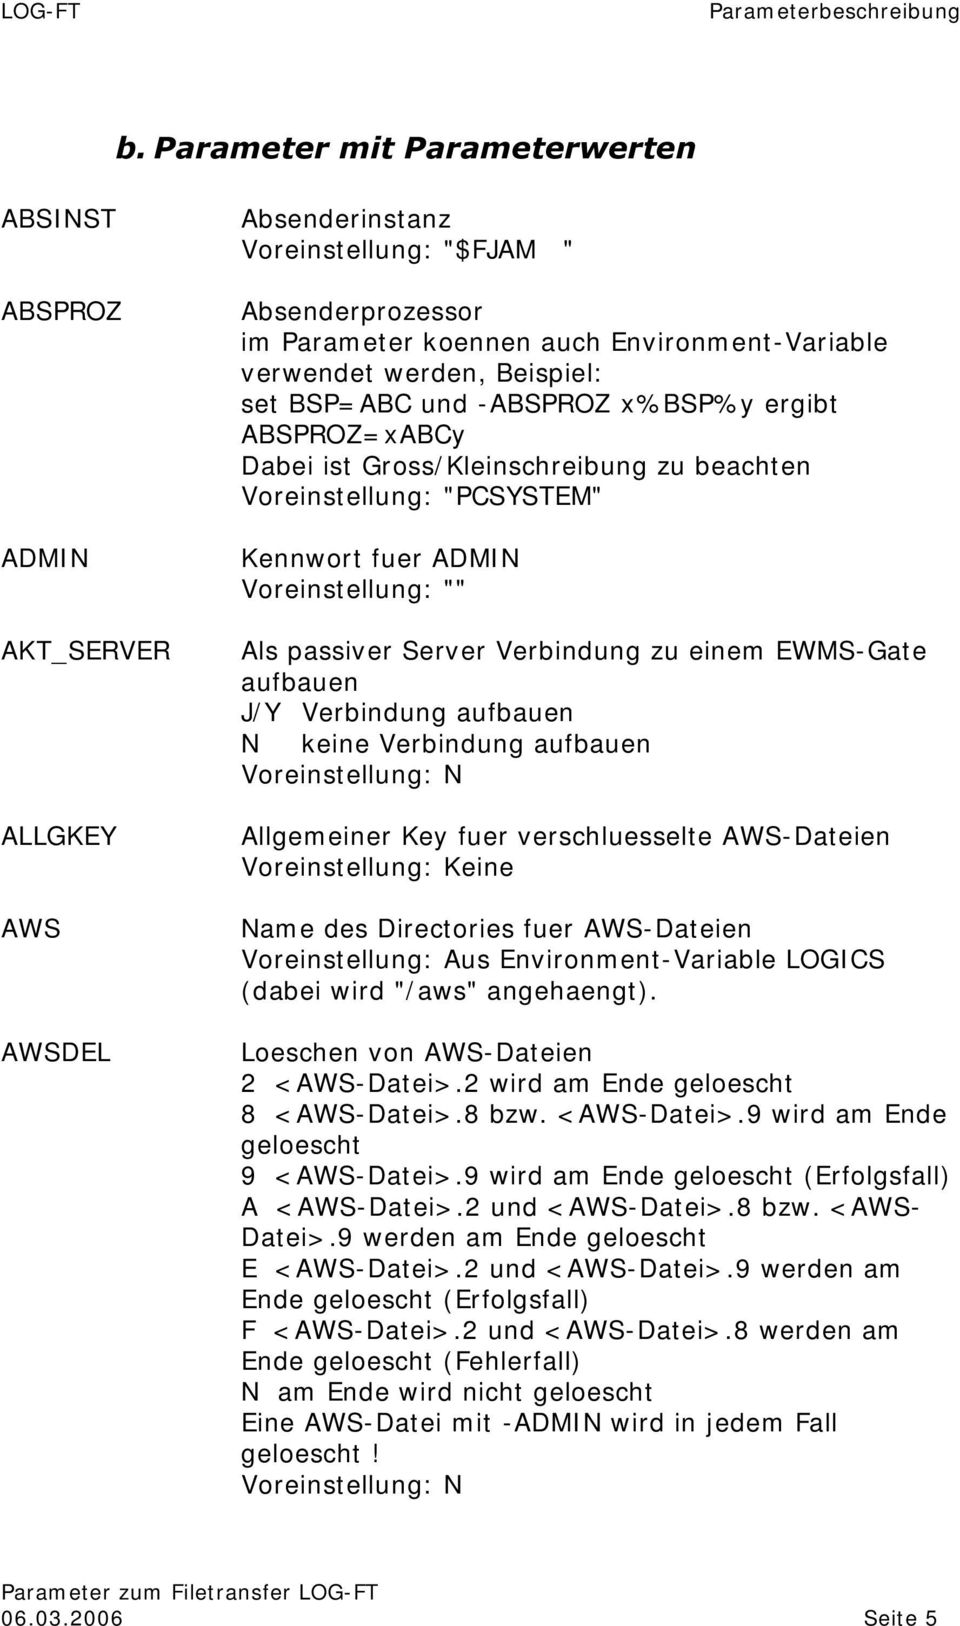 passiver Server Verbindung zu einem EWMS-Gate aufbauen J/ Y Verbindung aufbauen N keine Verbindung aufbauen Voreinstellung: N Allgemeiner Key fuer verschluesselte AWS-Dateien Name des Directories